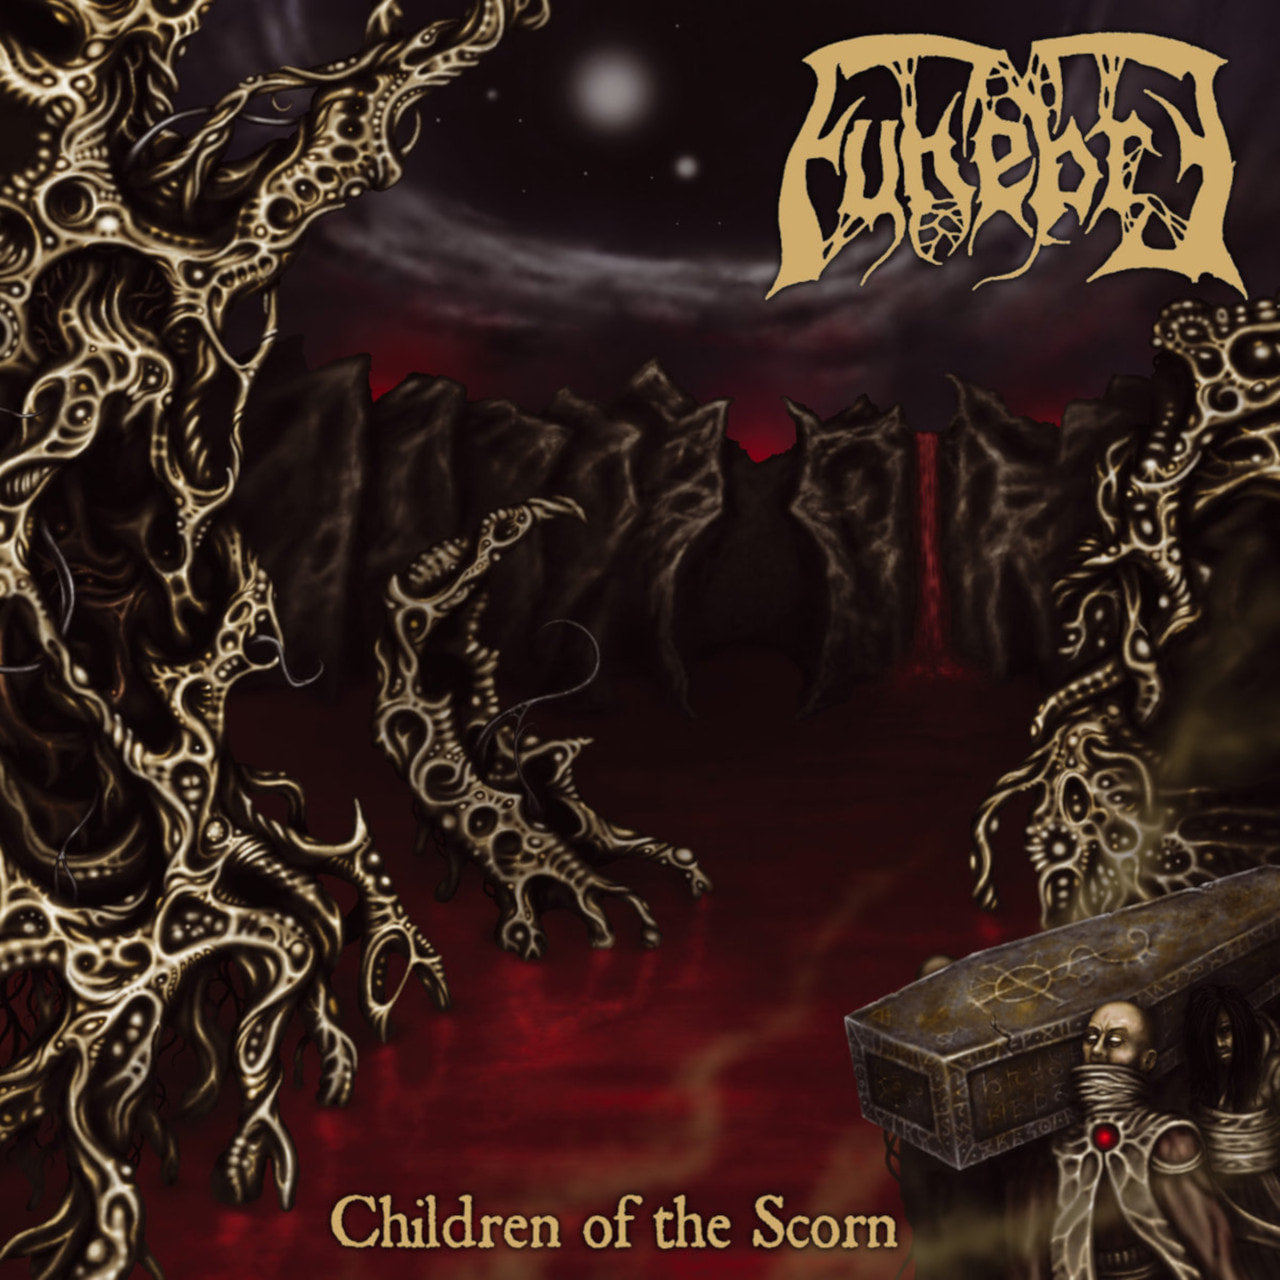 Funebre - Children of the Scorn (2017 Reissue) (CD)